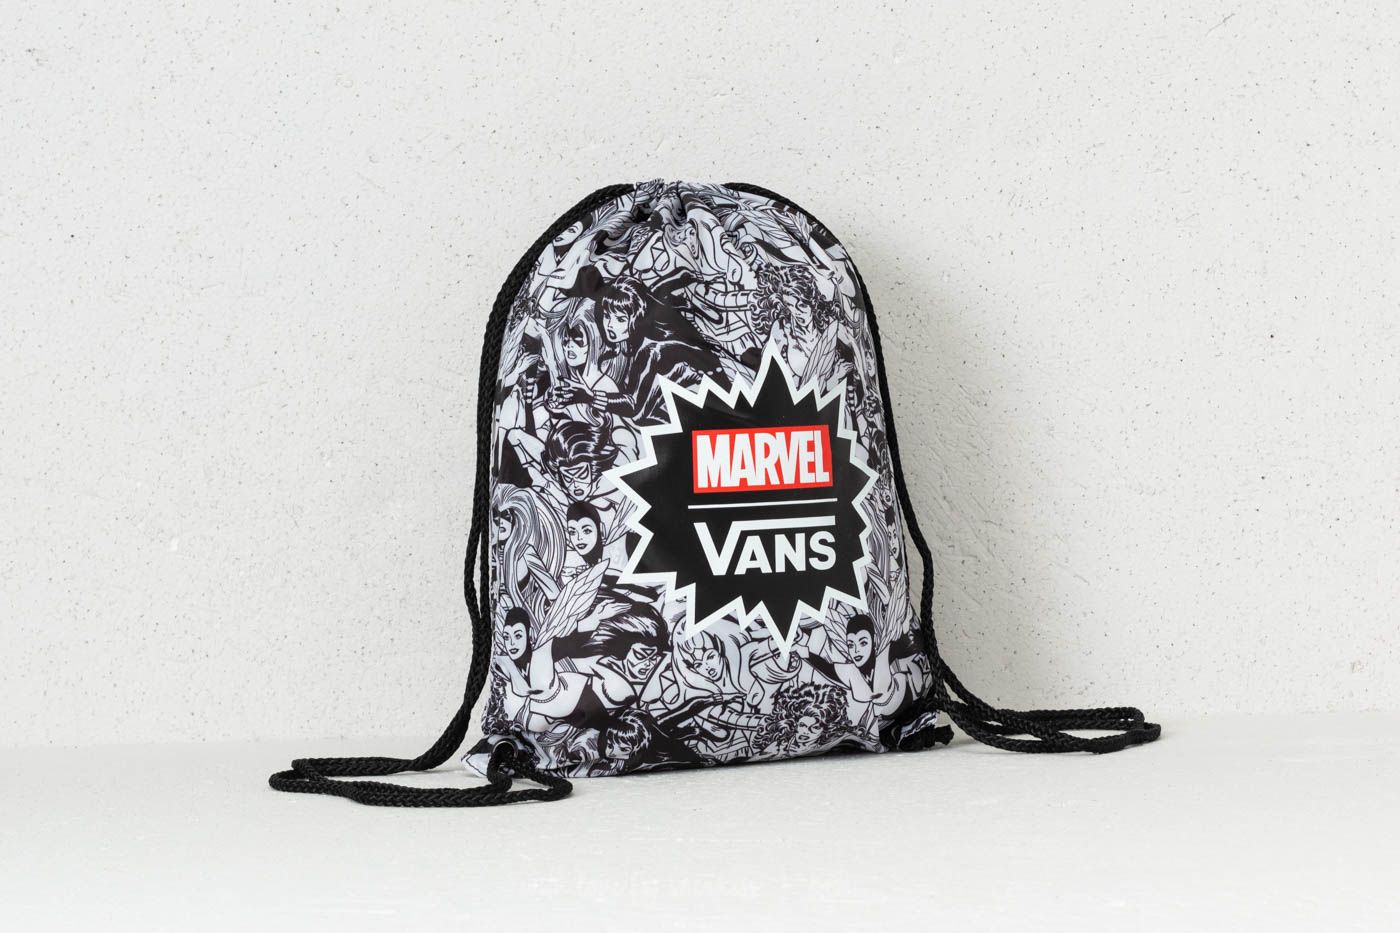 Gymsacks Vans Benched Bag (Marvel) Black